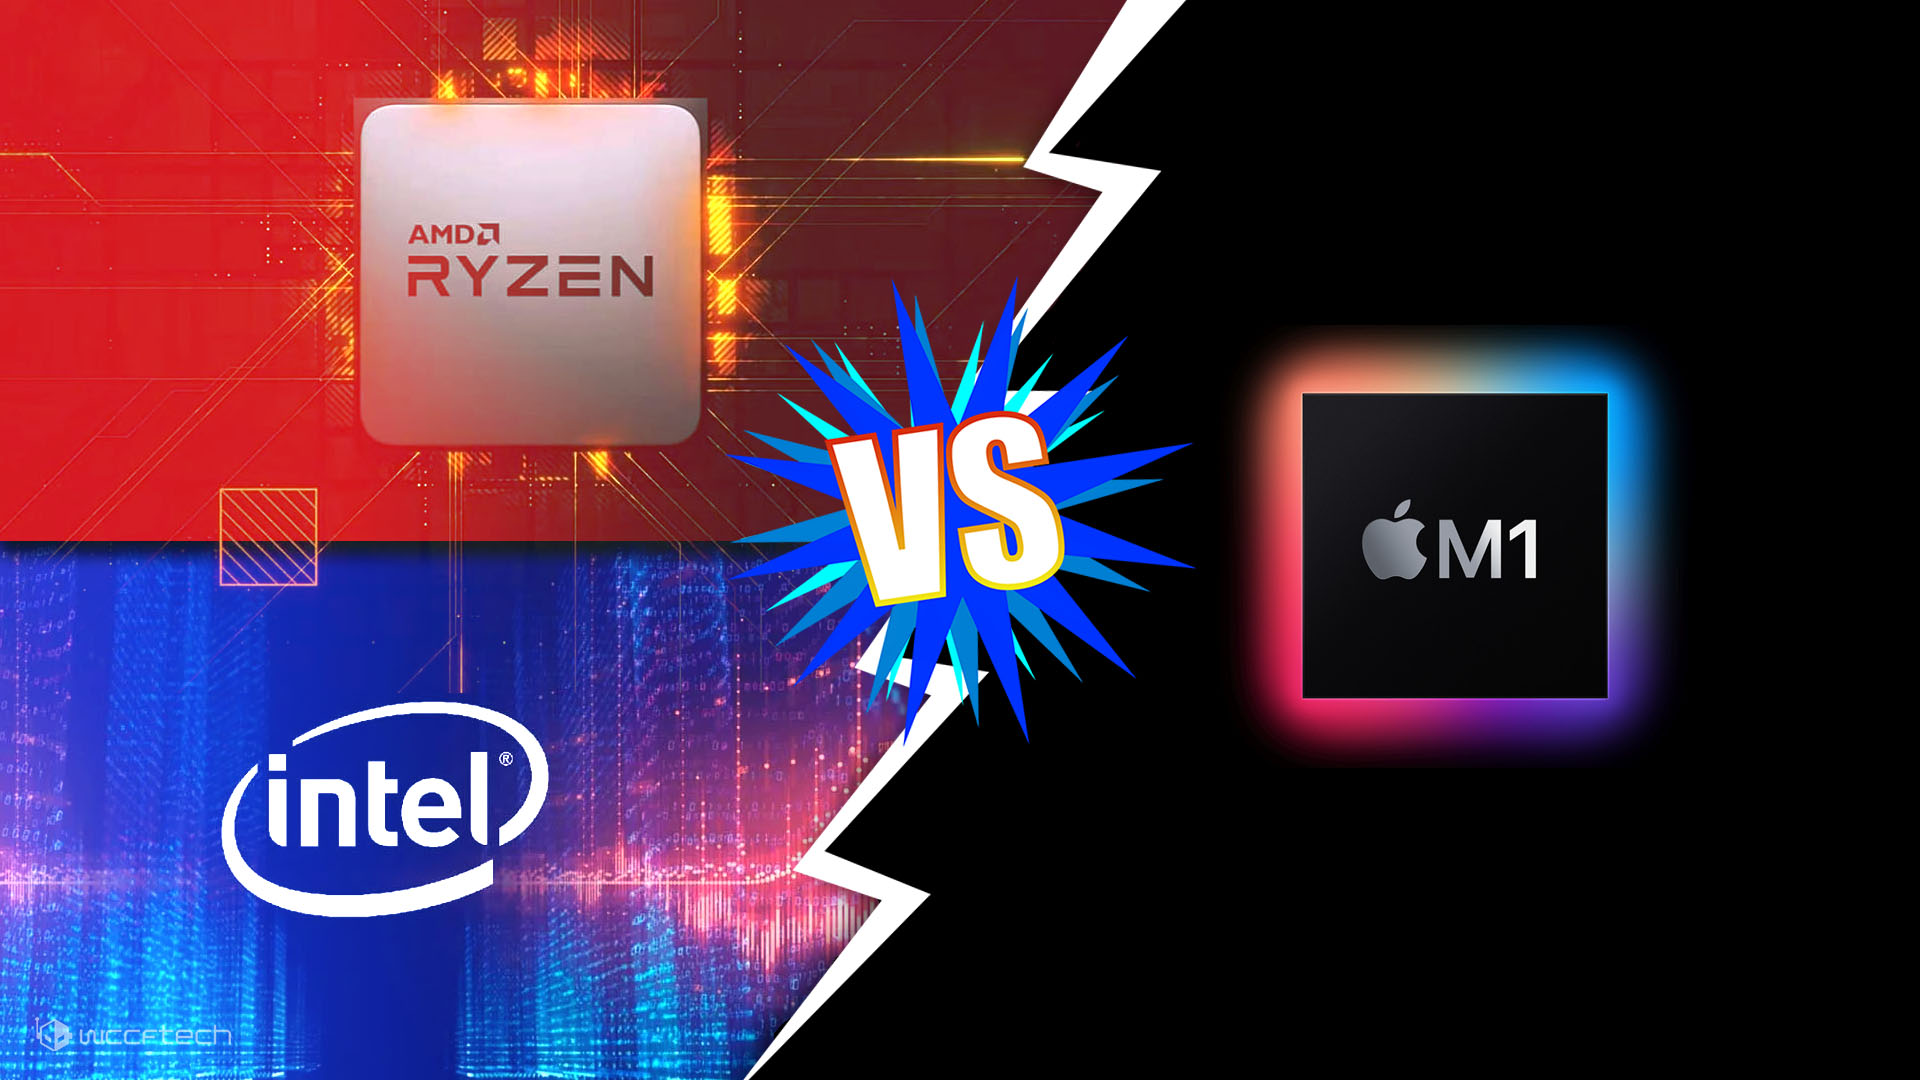 Đế chế laptop của Intel đang bị đe dọa bởi AMD Ryzen và Apple Silicon